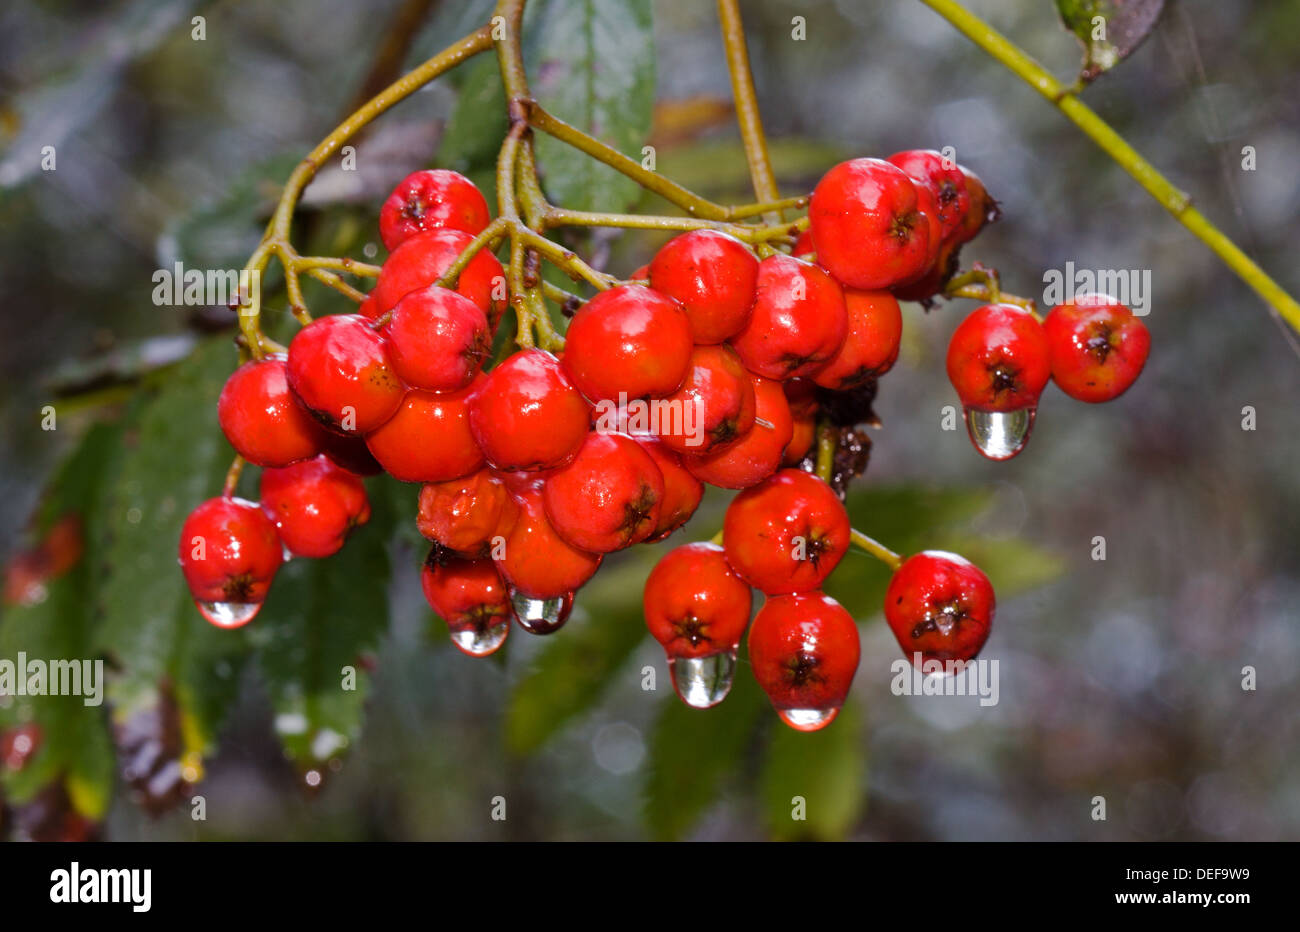 Berries of Rowan, wet after a rain shower Stock Photo